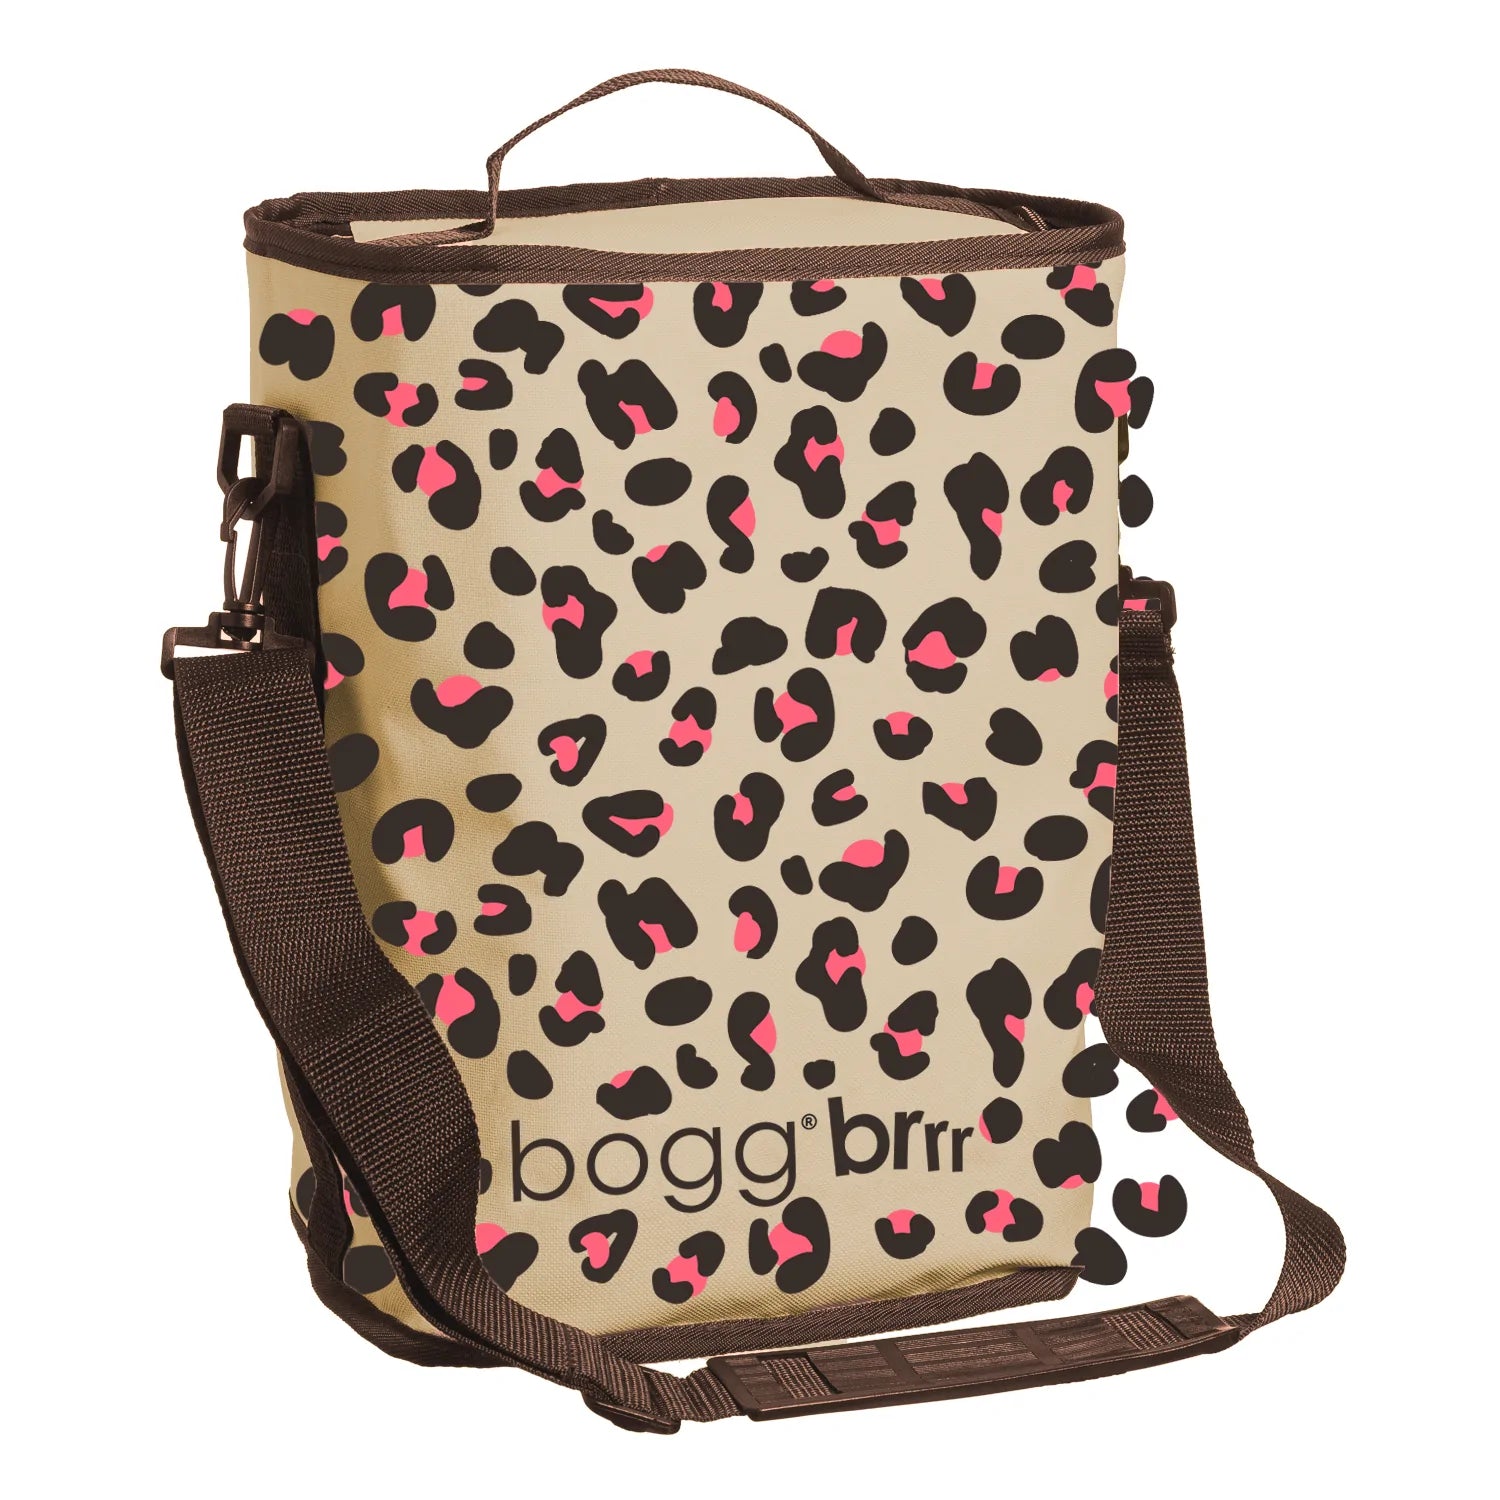 Bogg Brrr - Cooler Bag/Insert